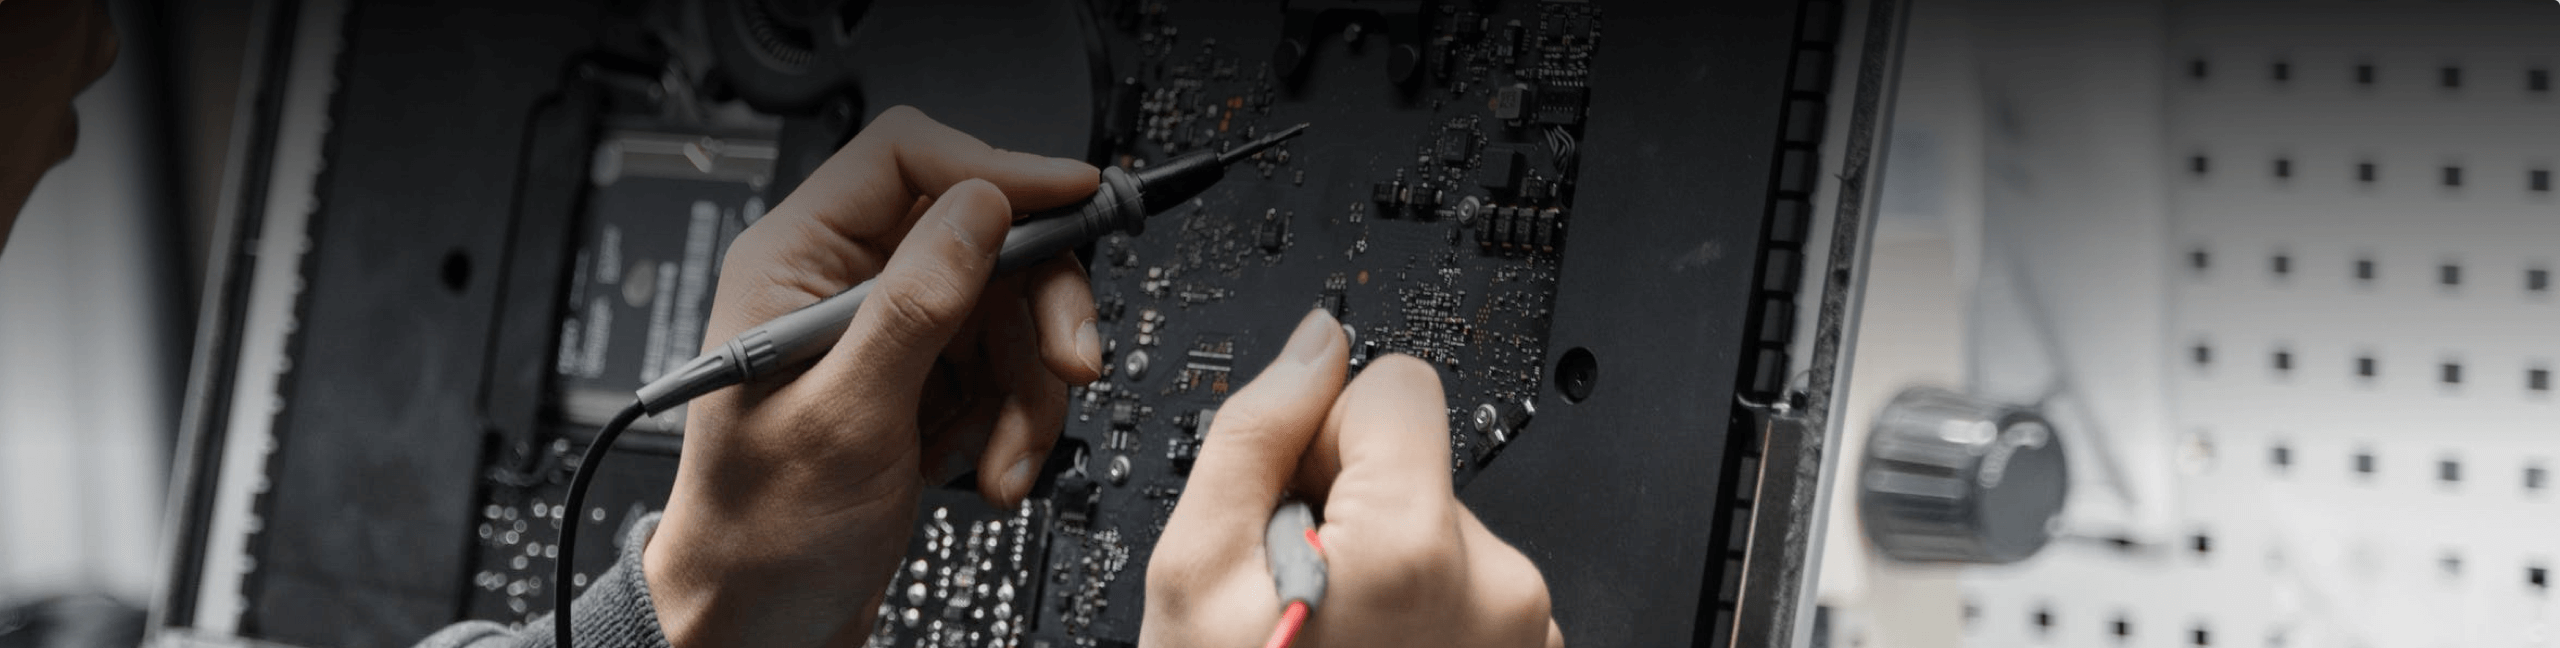 Repair of computer screens